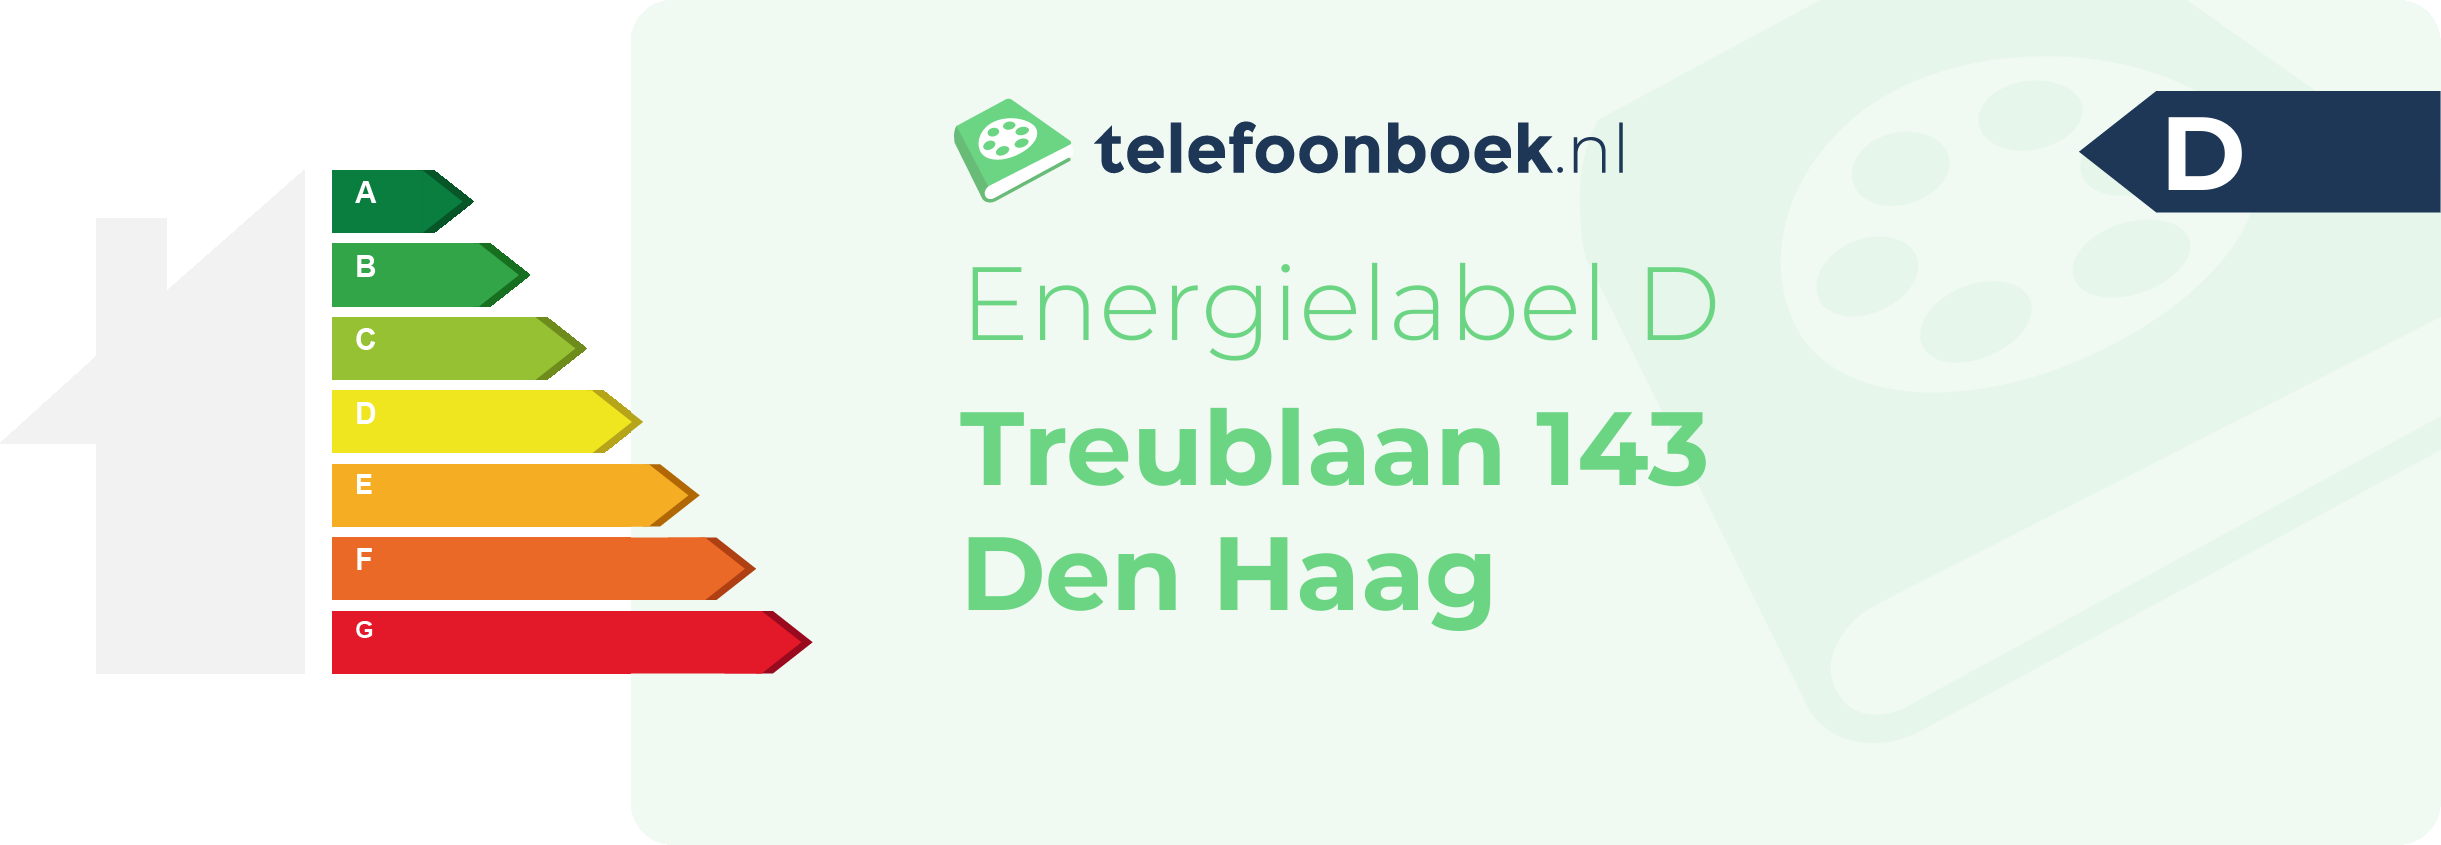 Energielabel Treublaan 143 Den Haag